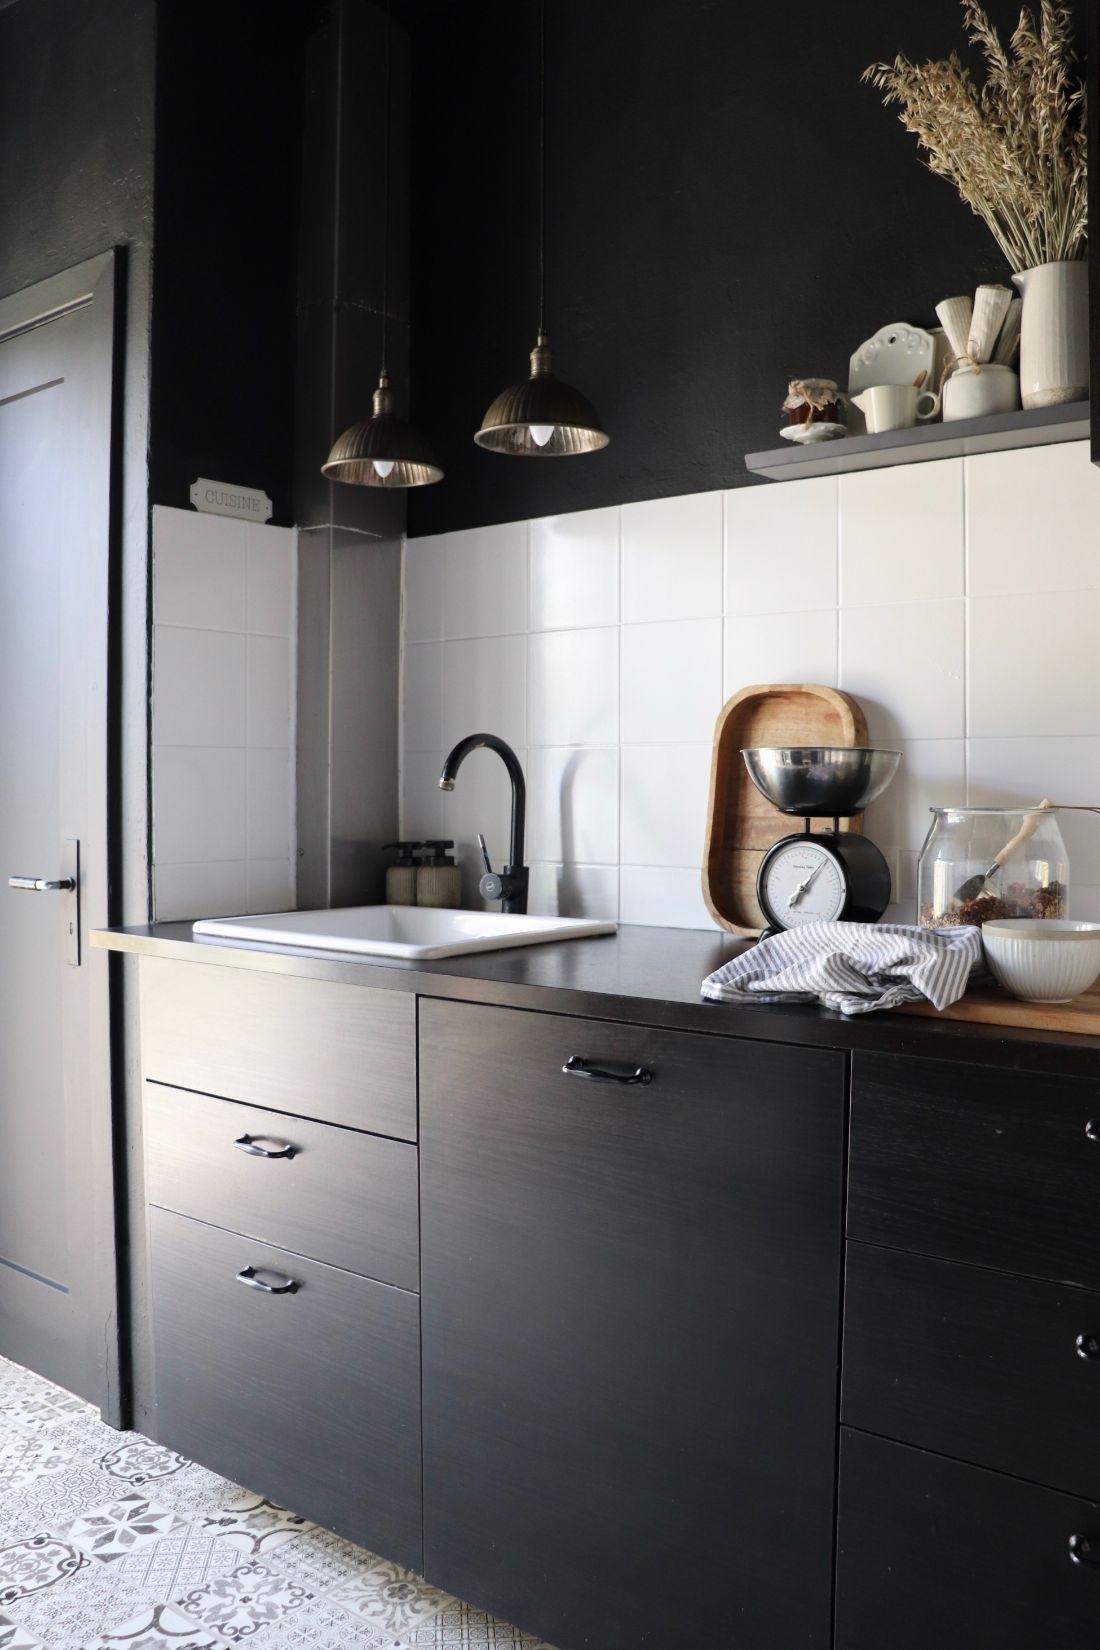 Kleines Makeover vom Wochenende! Die komplette Küche schwarz gestrichen inklusive Decke...#brittabloggt #black #kitchen